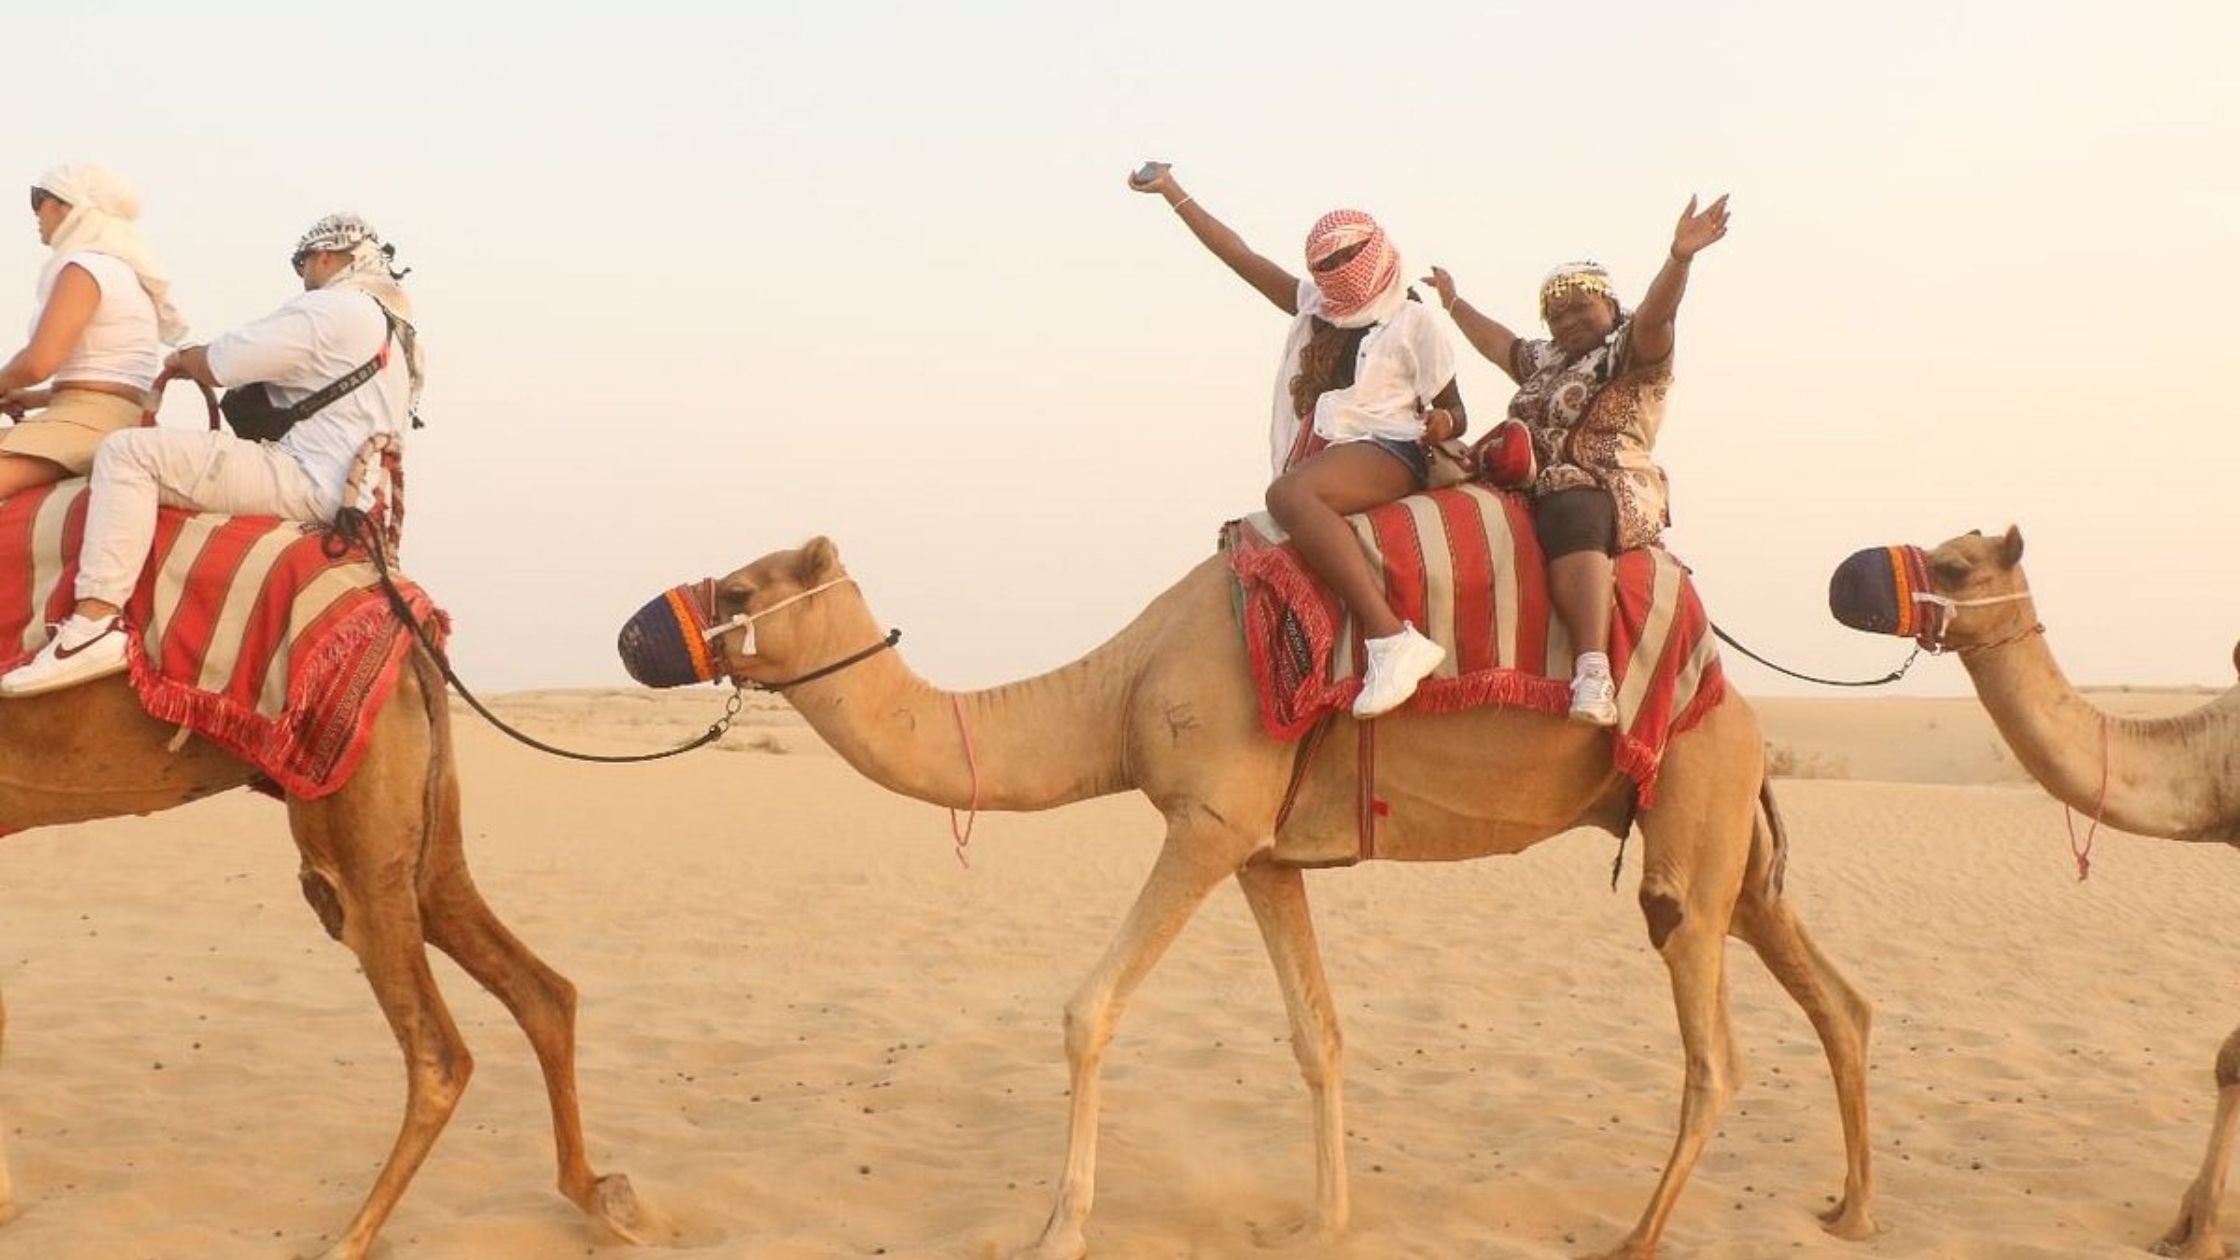 Camel Trekking